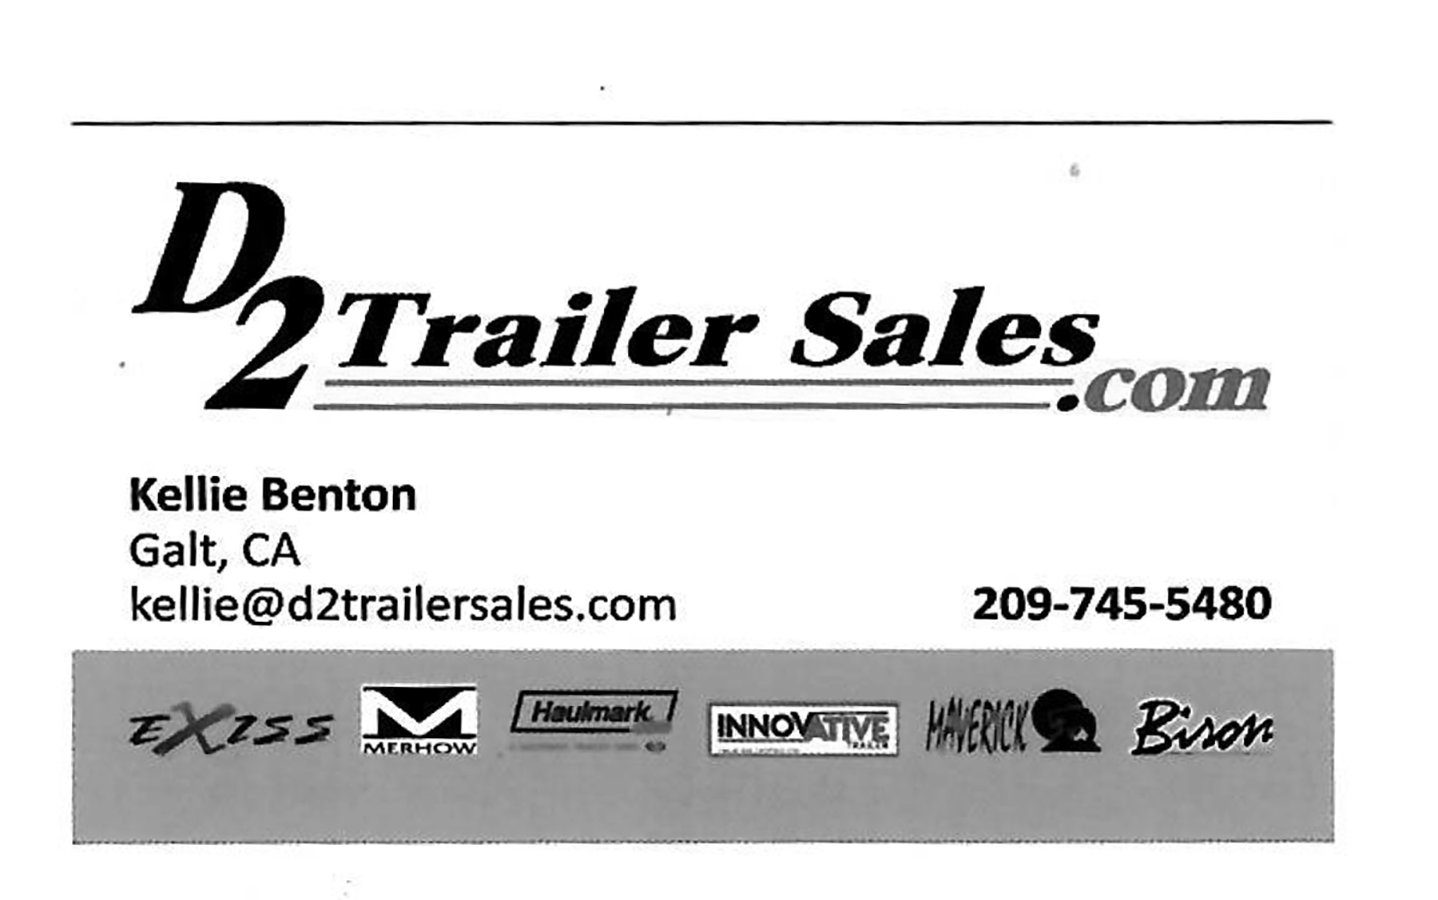 D2 Trailer Sales